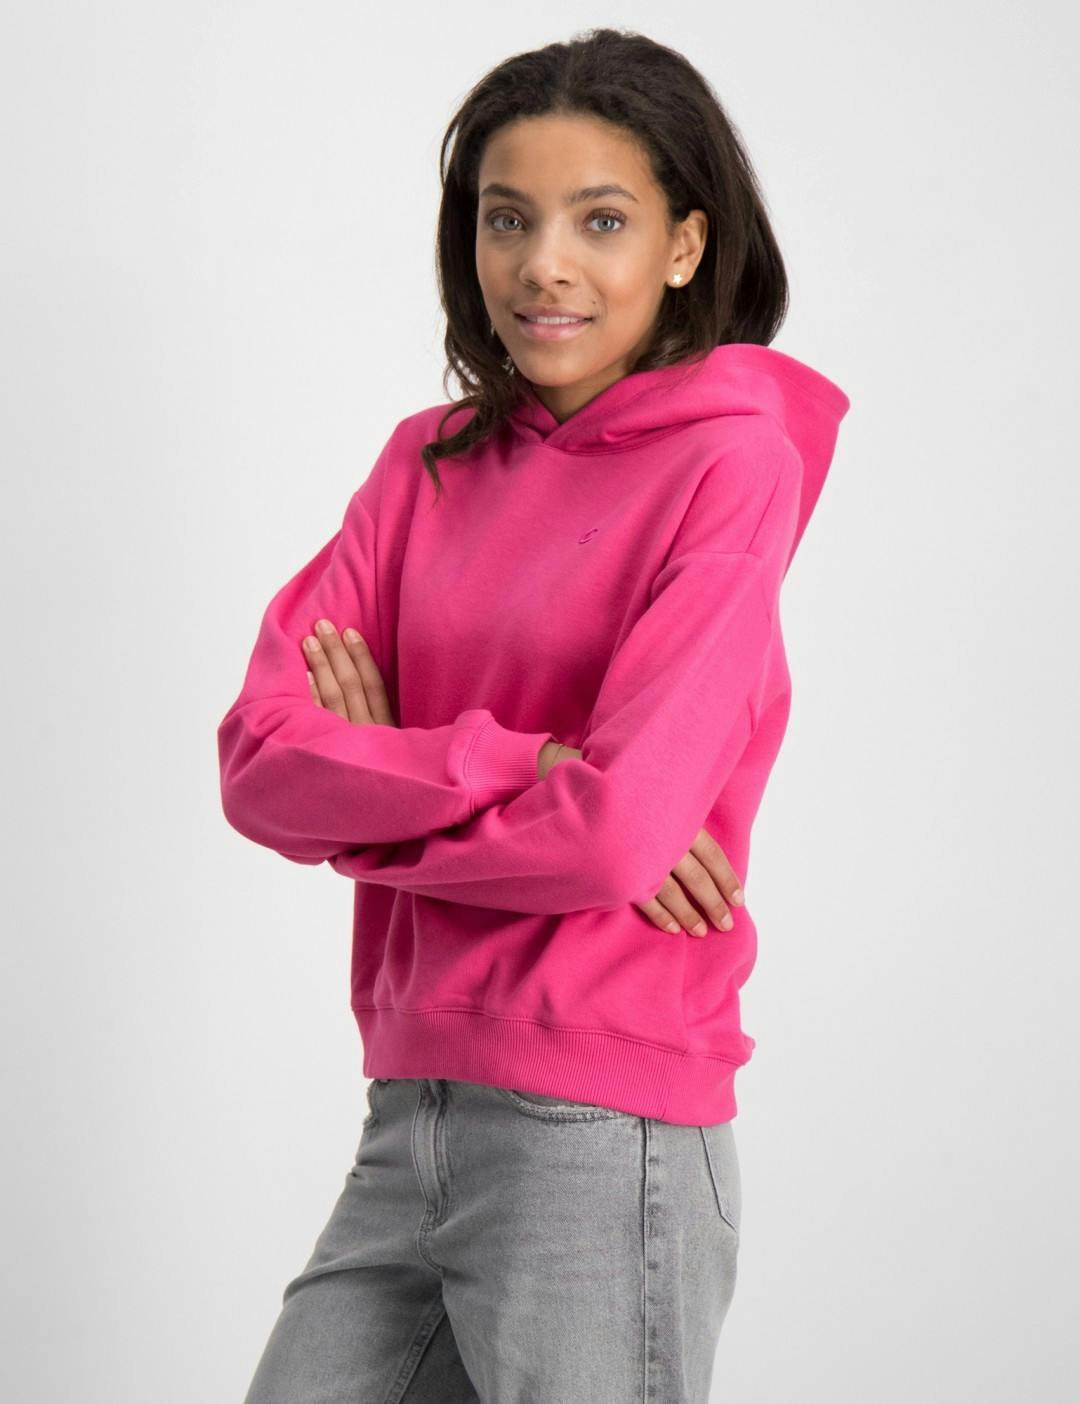 geboorte passen Bestrating Roze Hooded Sweatshirt voor Meisjes | Kids Brand Store